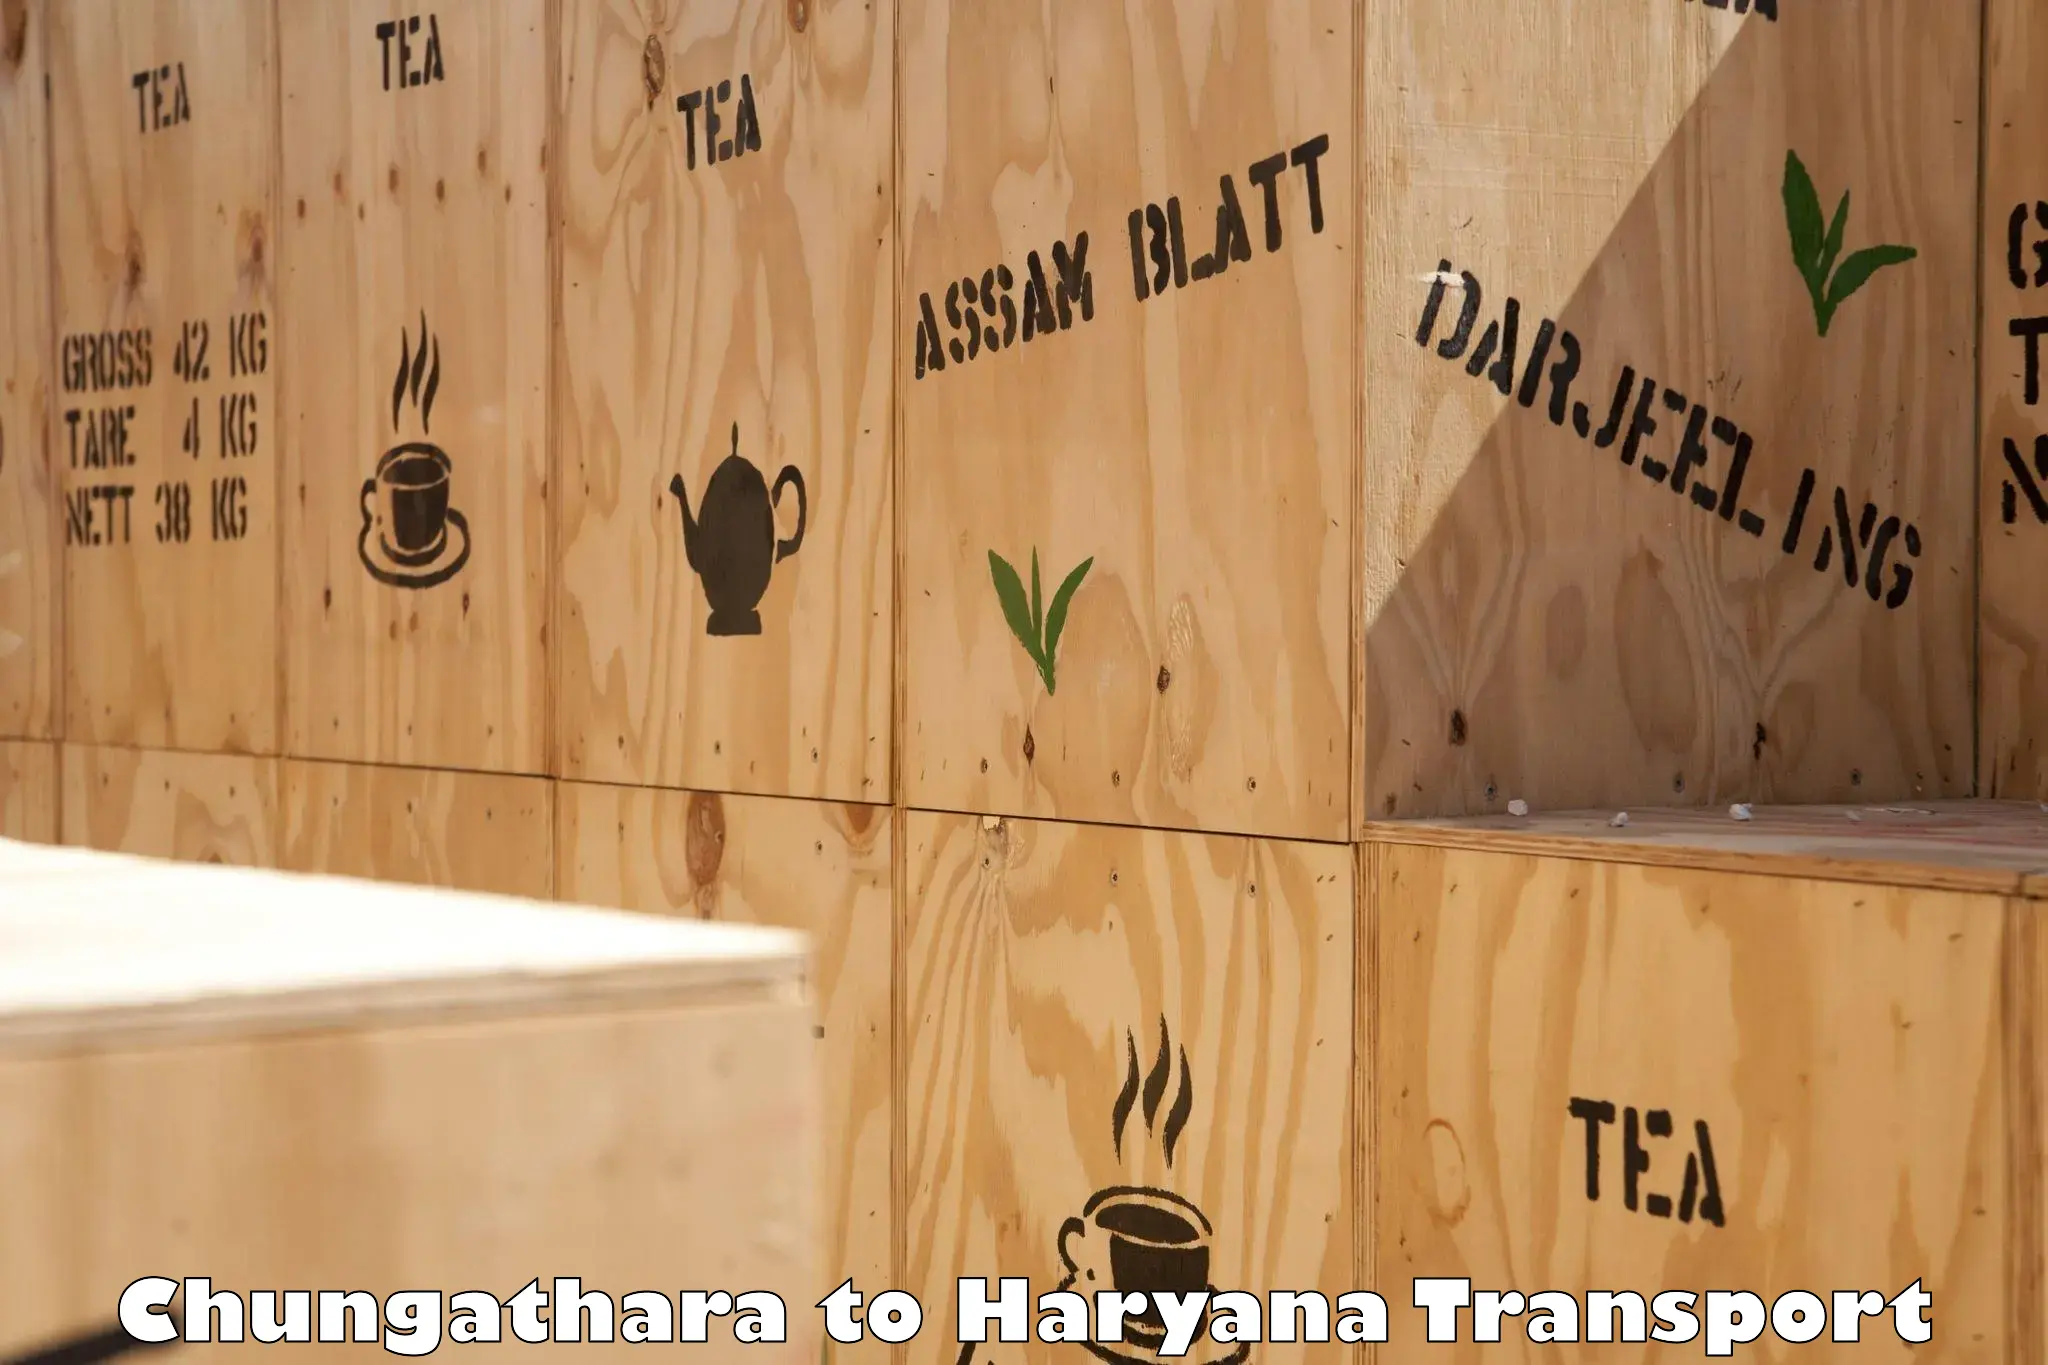 Cargo train transport services Chungathara to Haryana